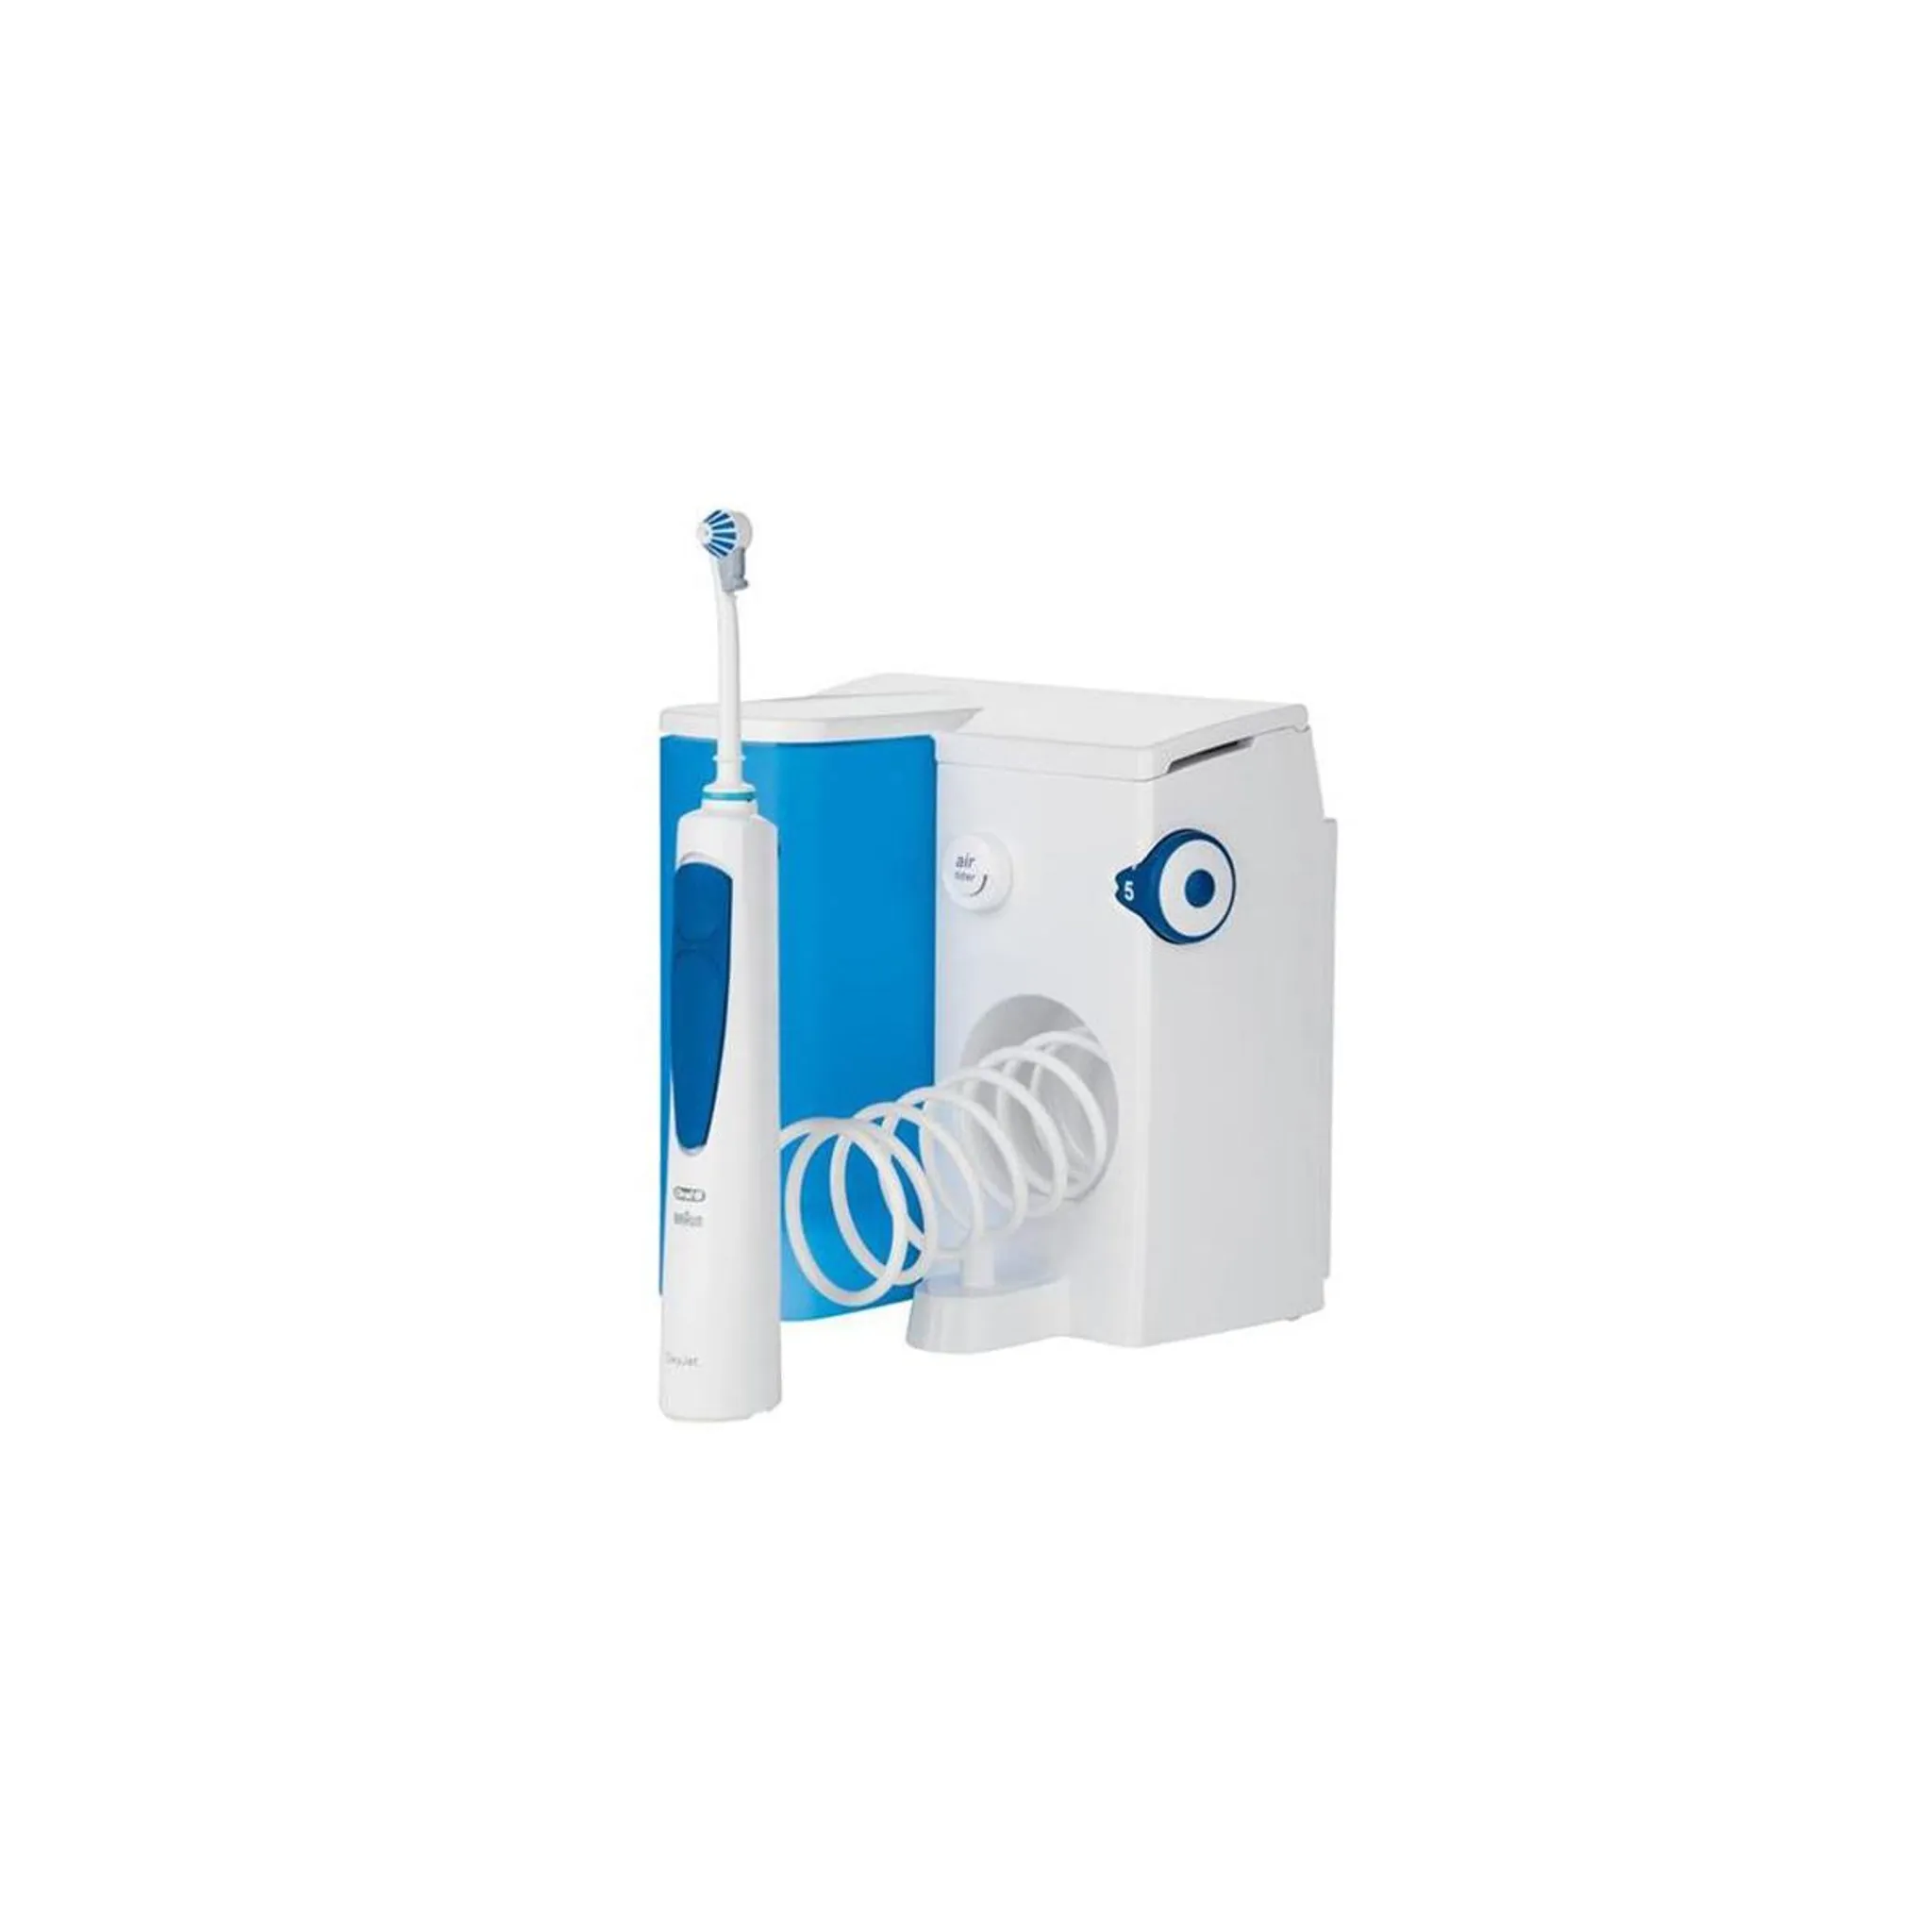 Oral-B Reinigungssystem OxyJet mit Munddusche